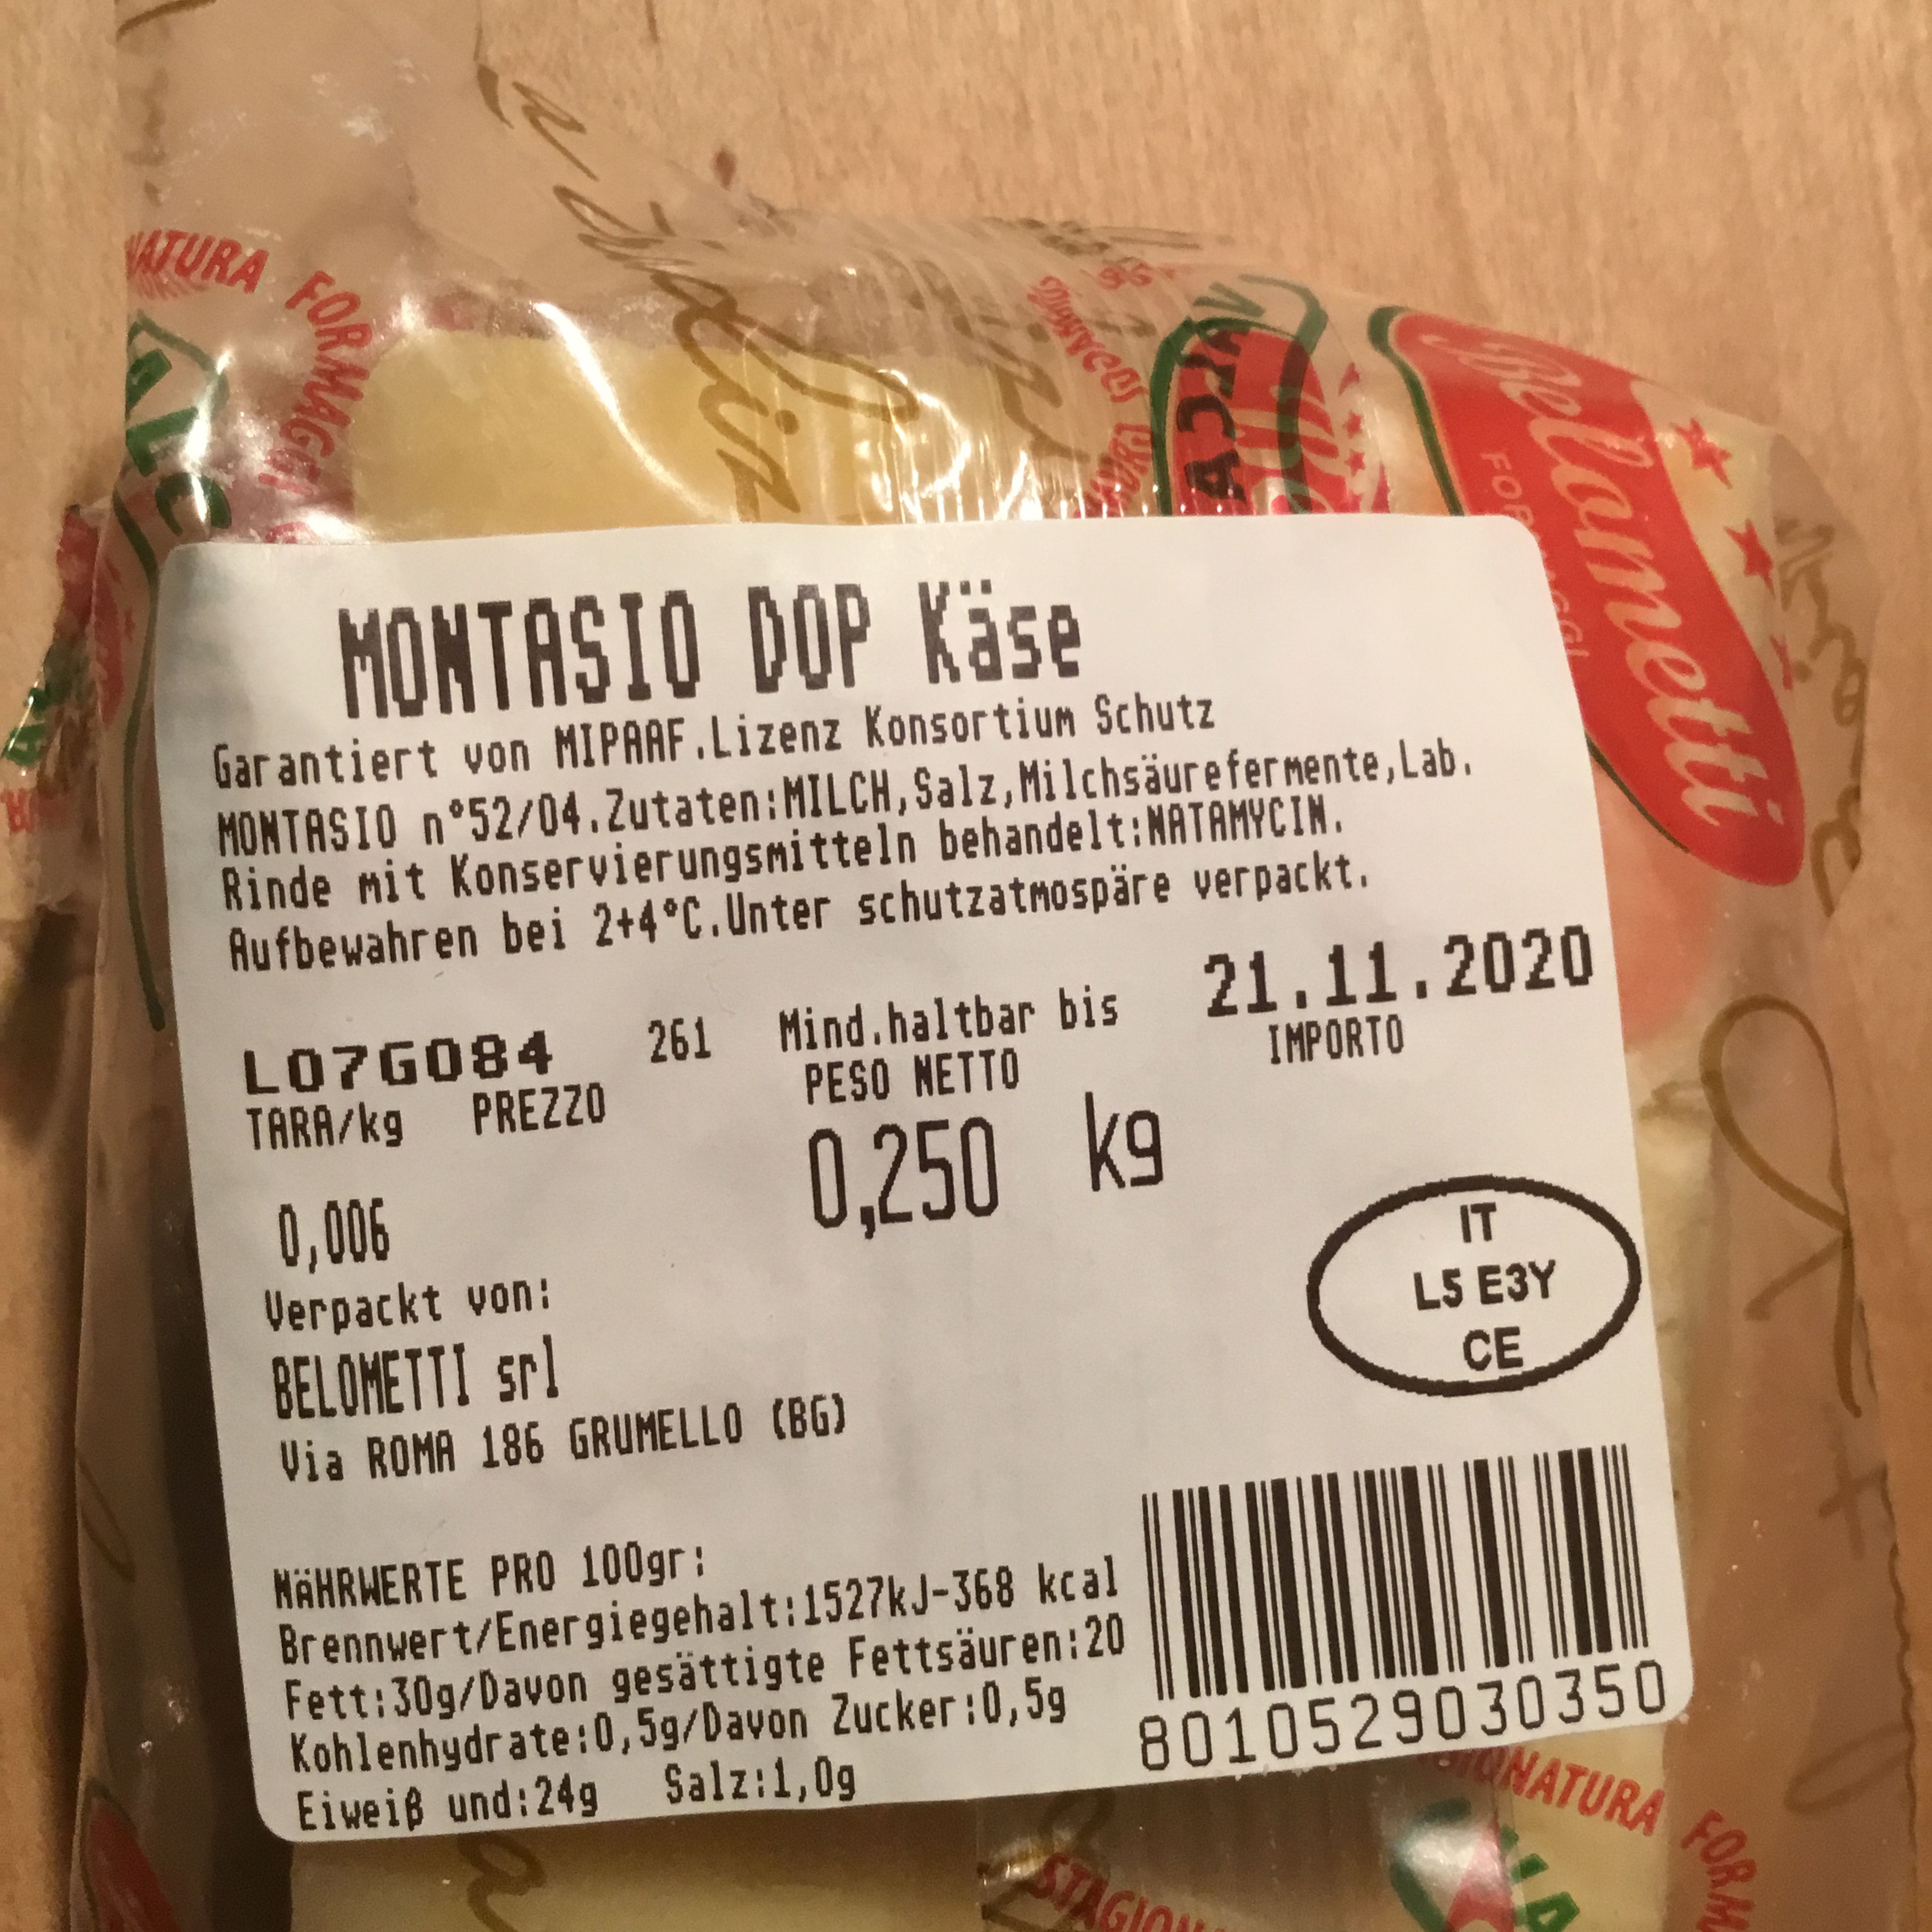 Hierhab ich nochnen günstigen original italienischen preisgünstigen Käse gekauft, gerieben und dazu verwendet. Lecker. Einfach malwasneues ausprobieren.